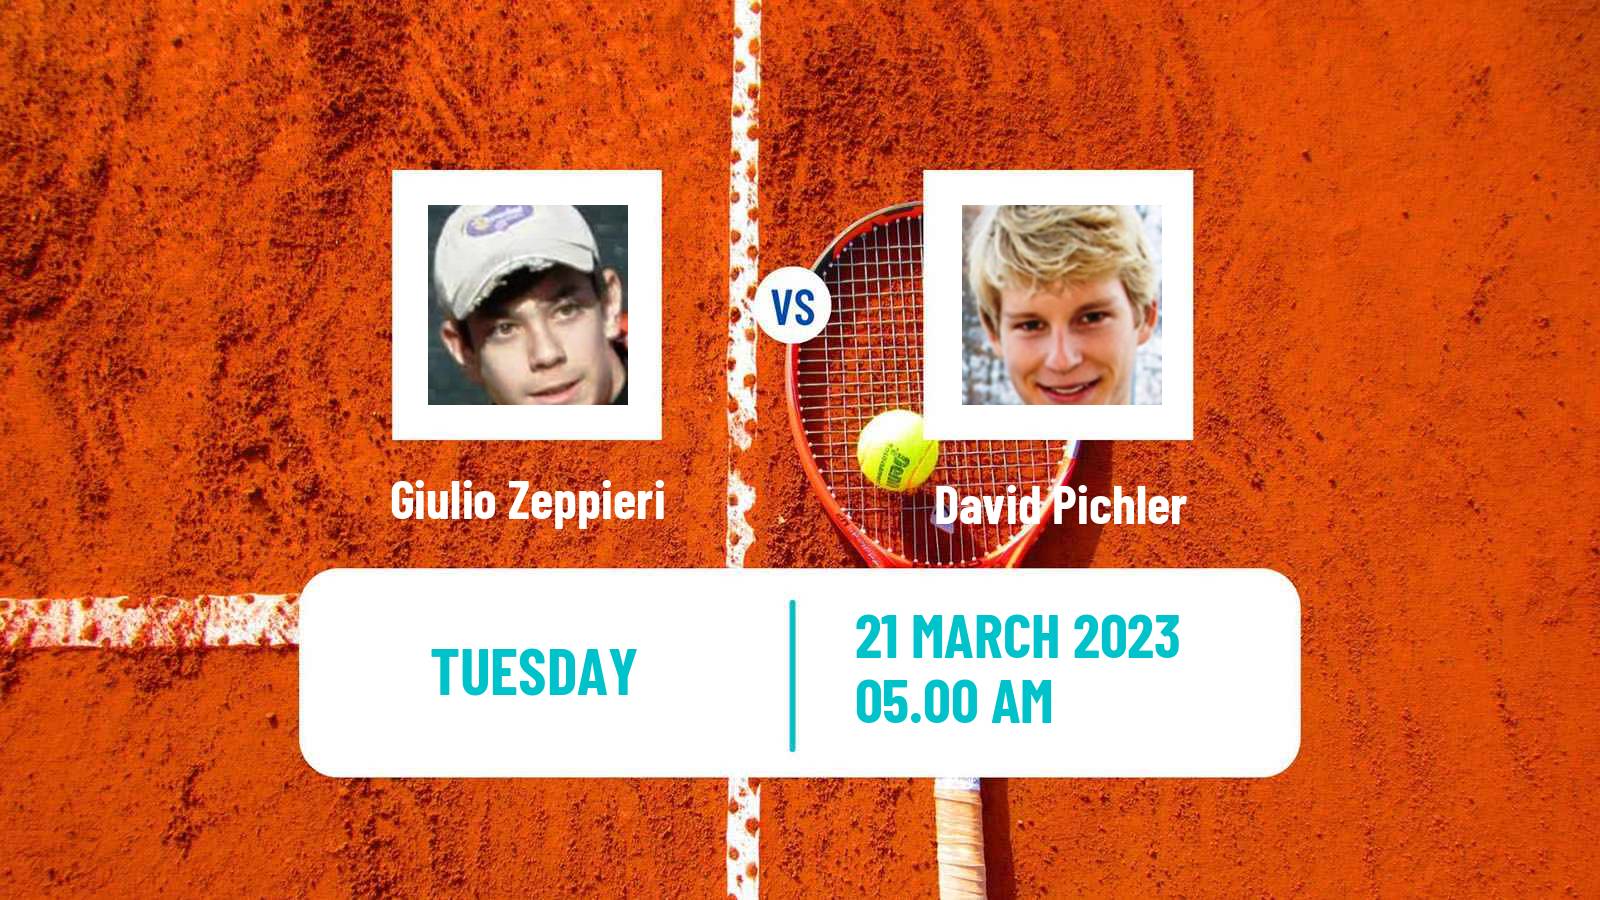 Tennis ATP Challenger Giulio Zeppieri - David Pichler